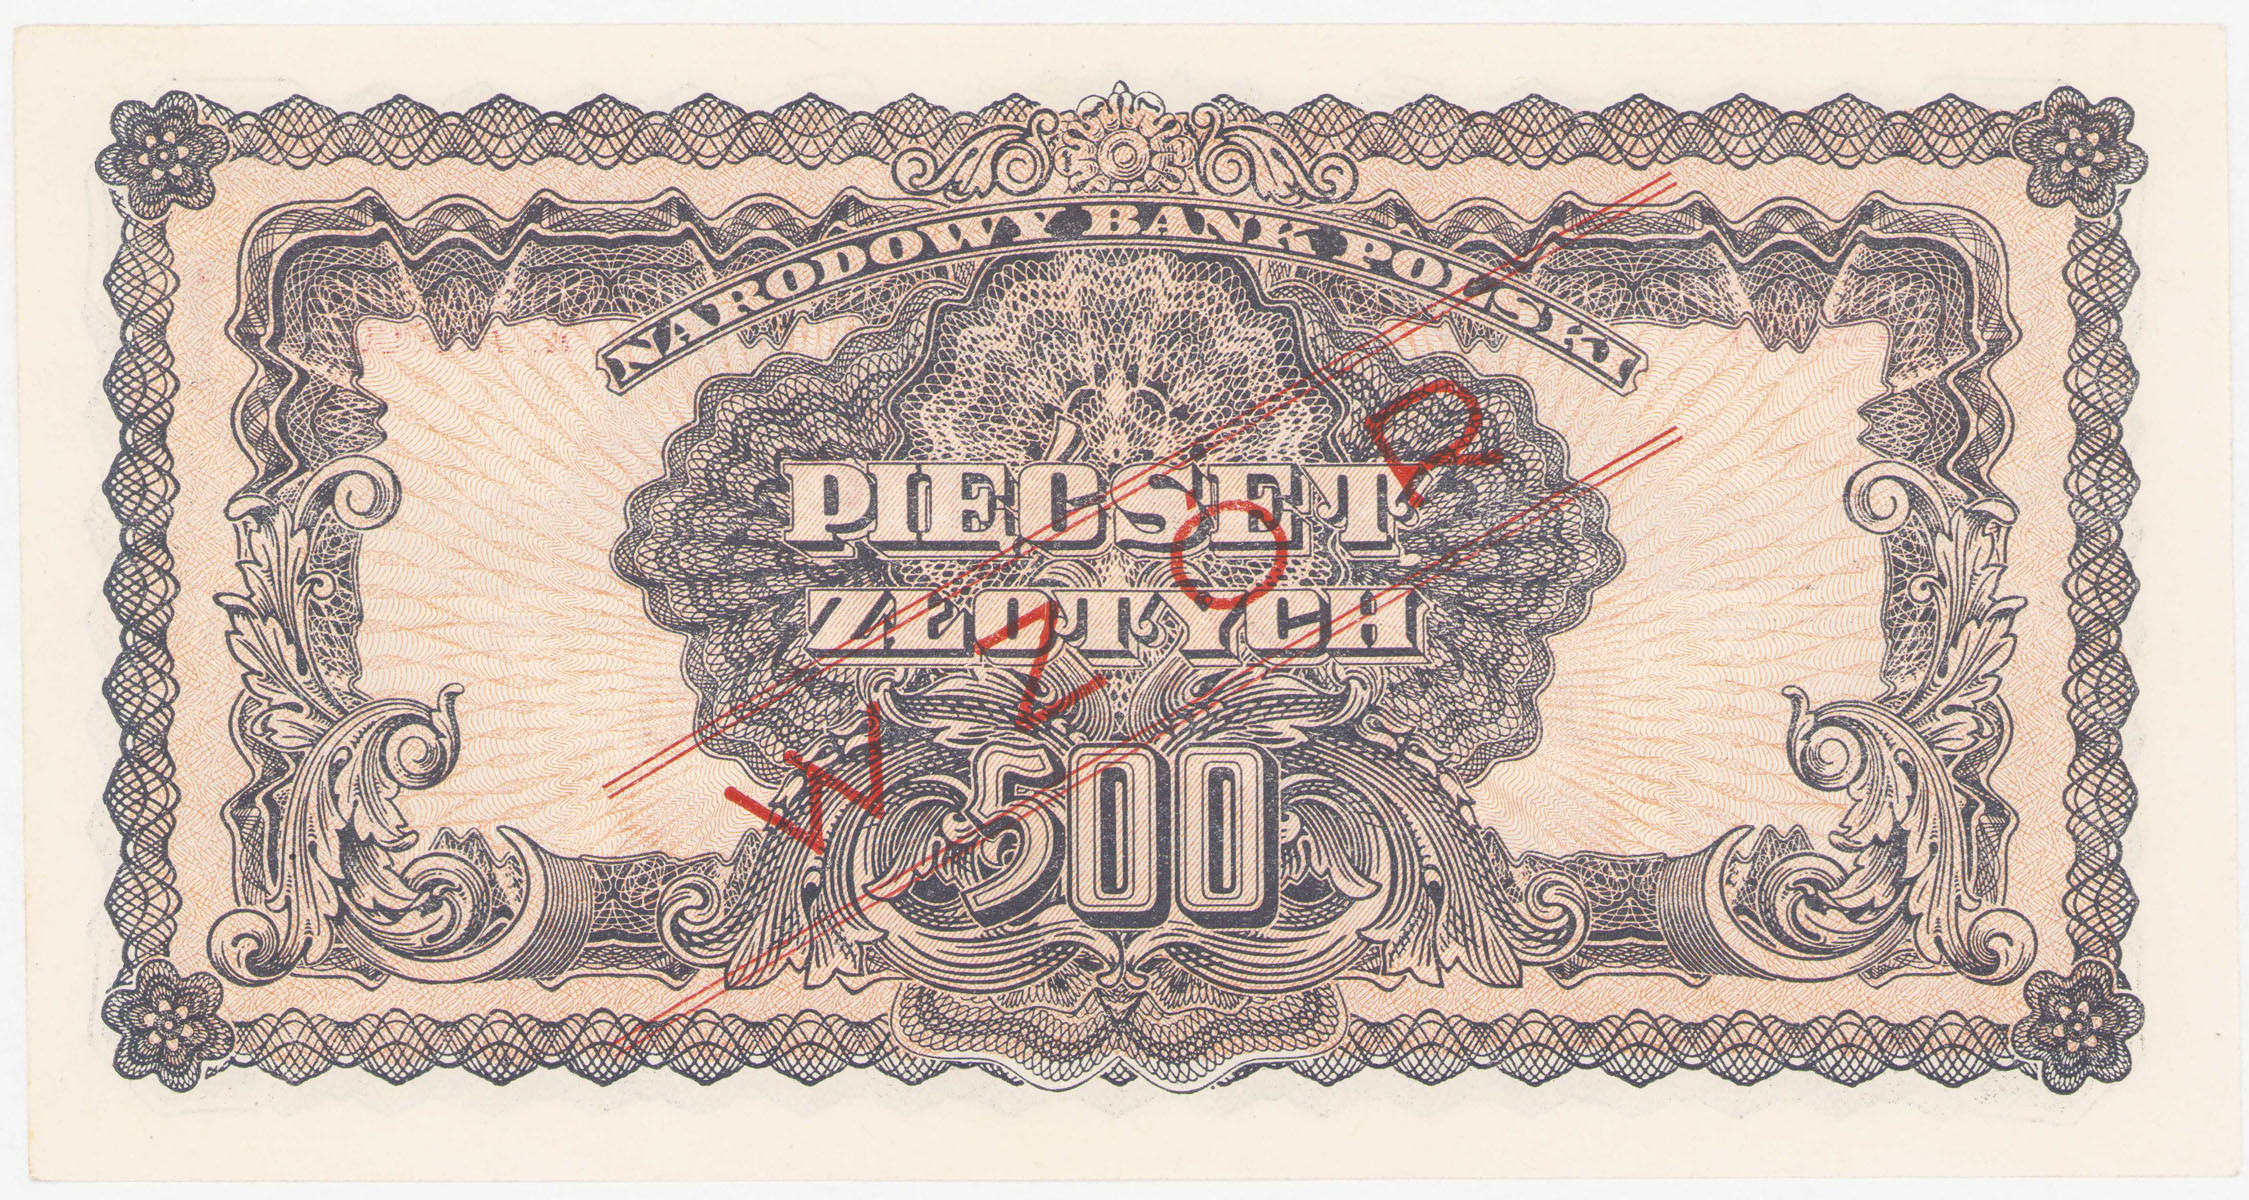 WZÓR 500 złotych 1944 seria Az - OBOWIĄZKOWE - RZADKOŚĆ R6